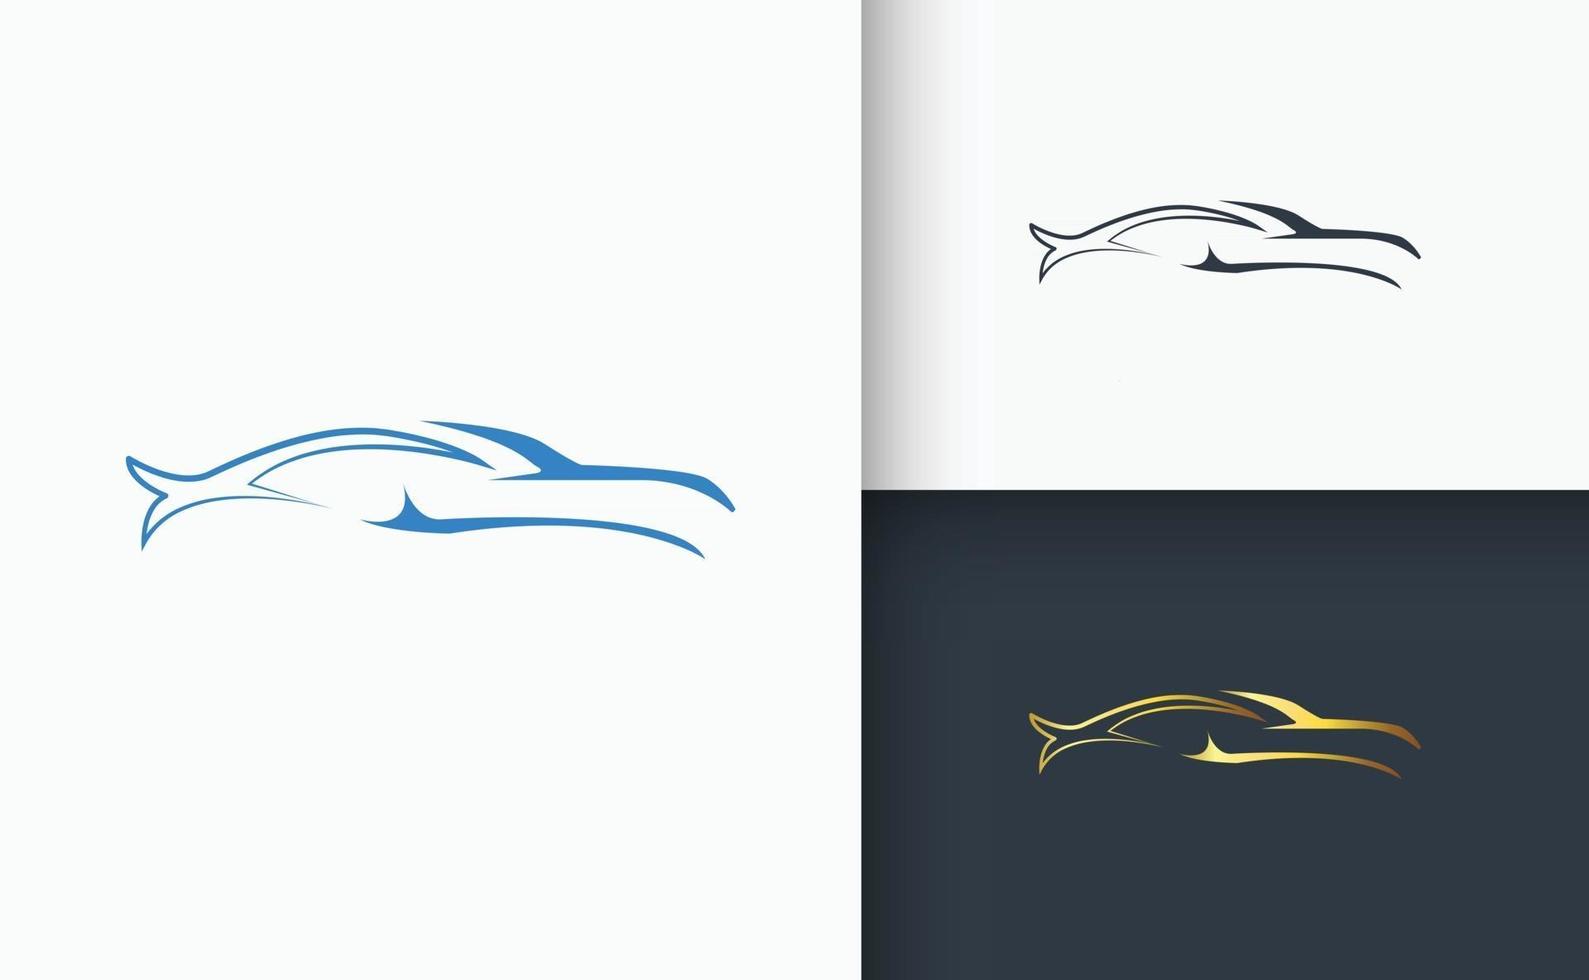 set di modelli di progettazione del logo dell'auto vettore